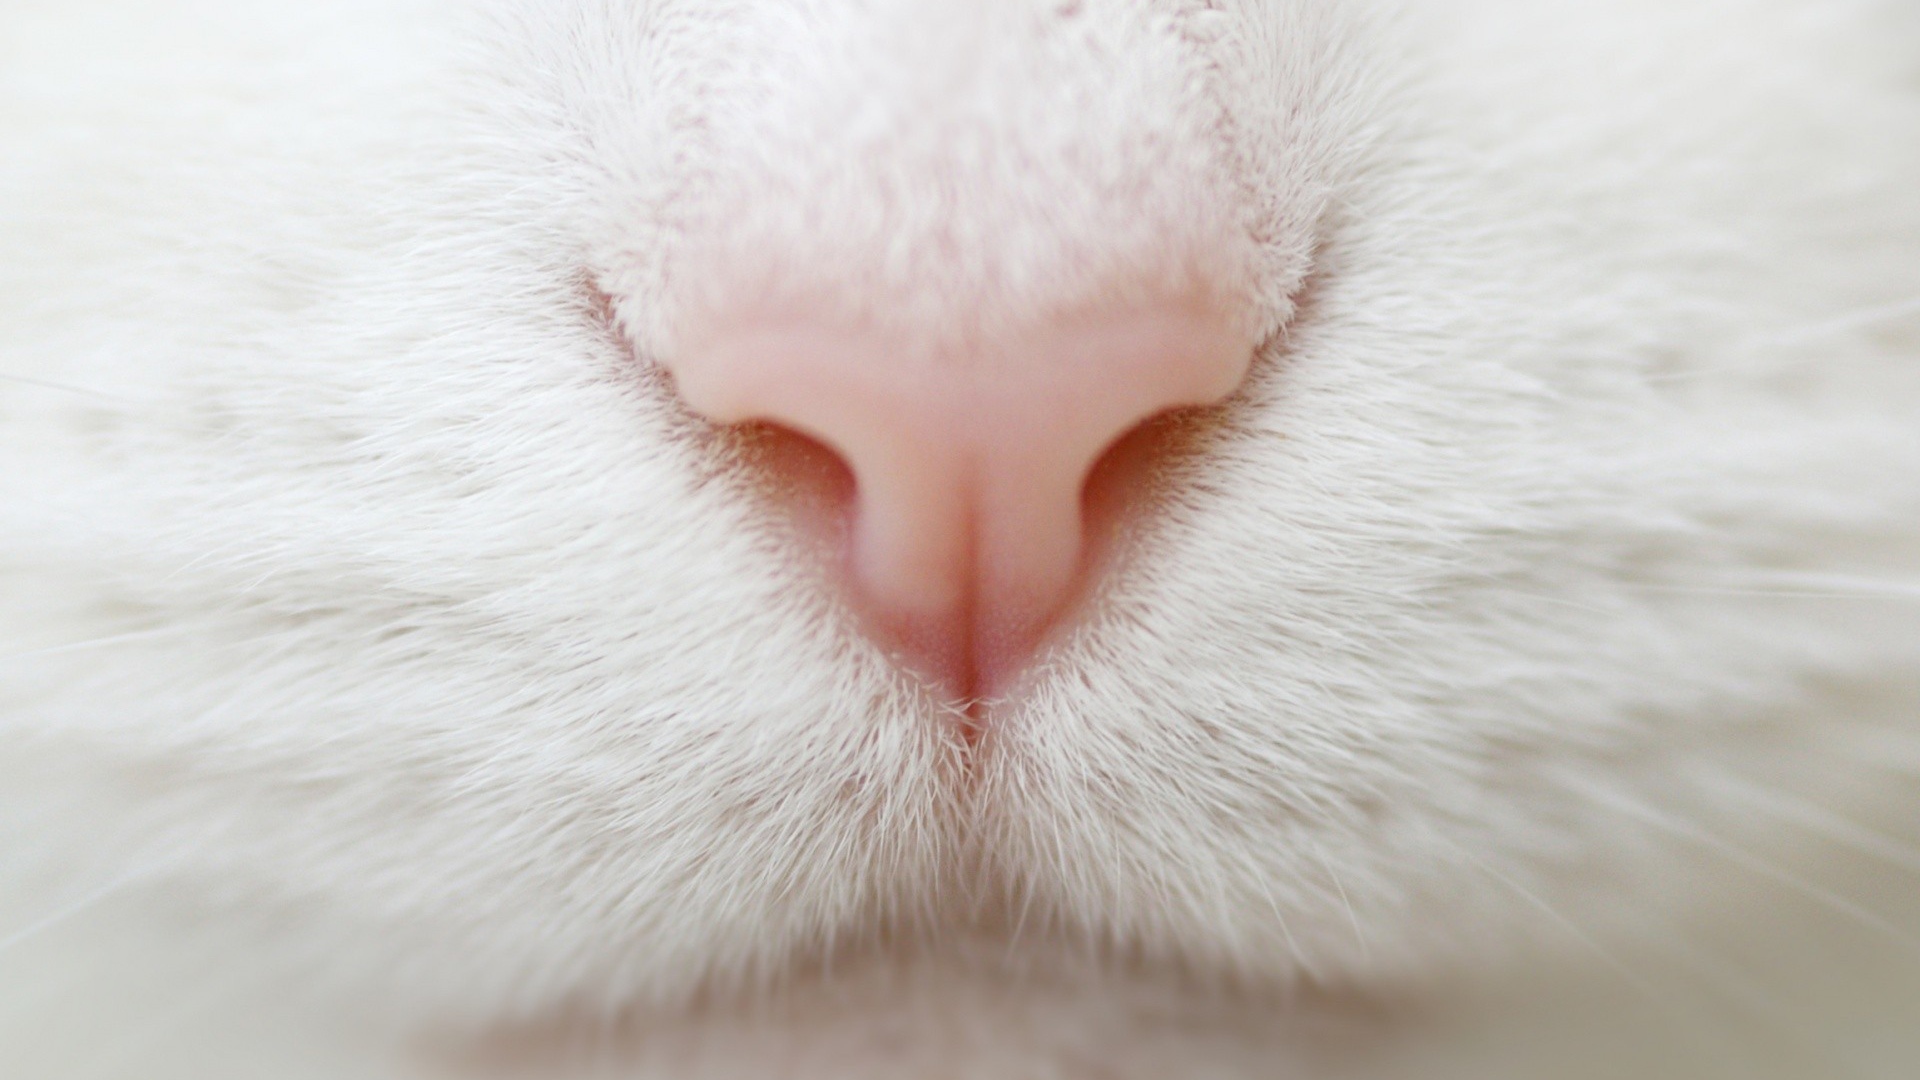 Розовый нос на белой мордочке кота